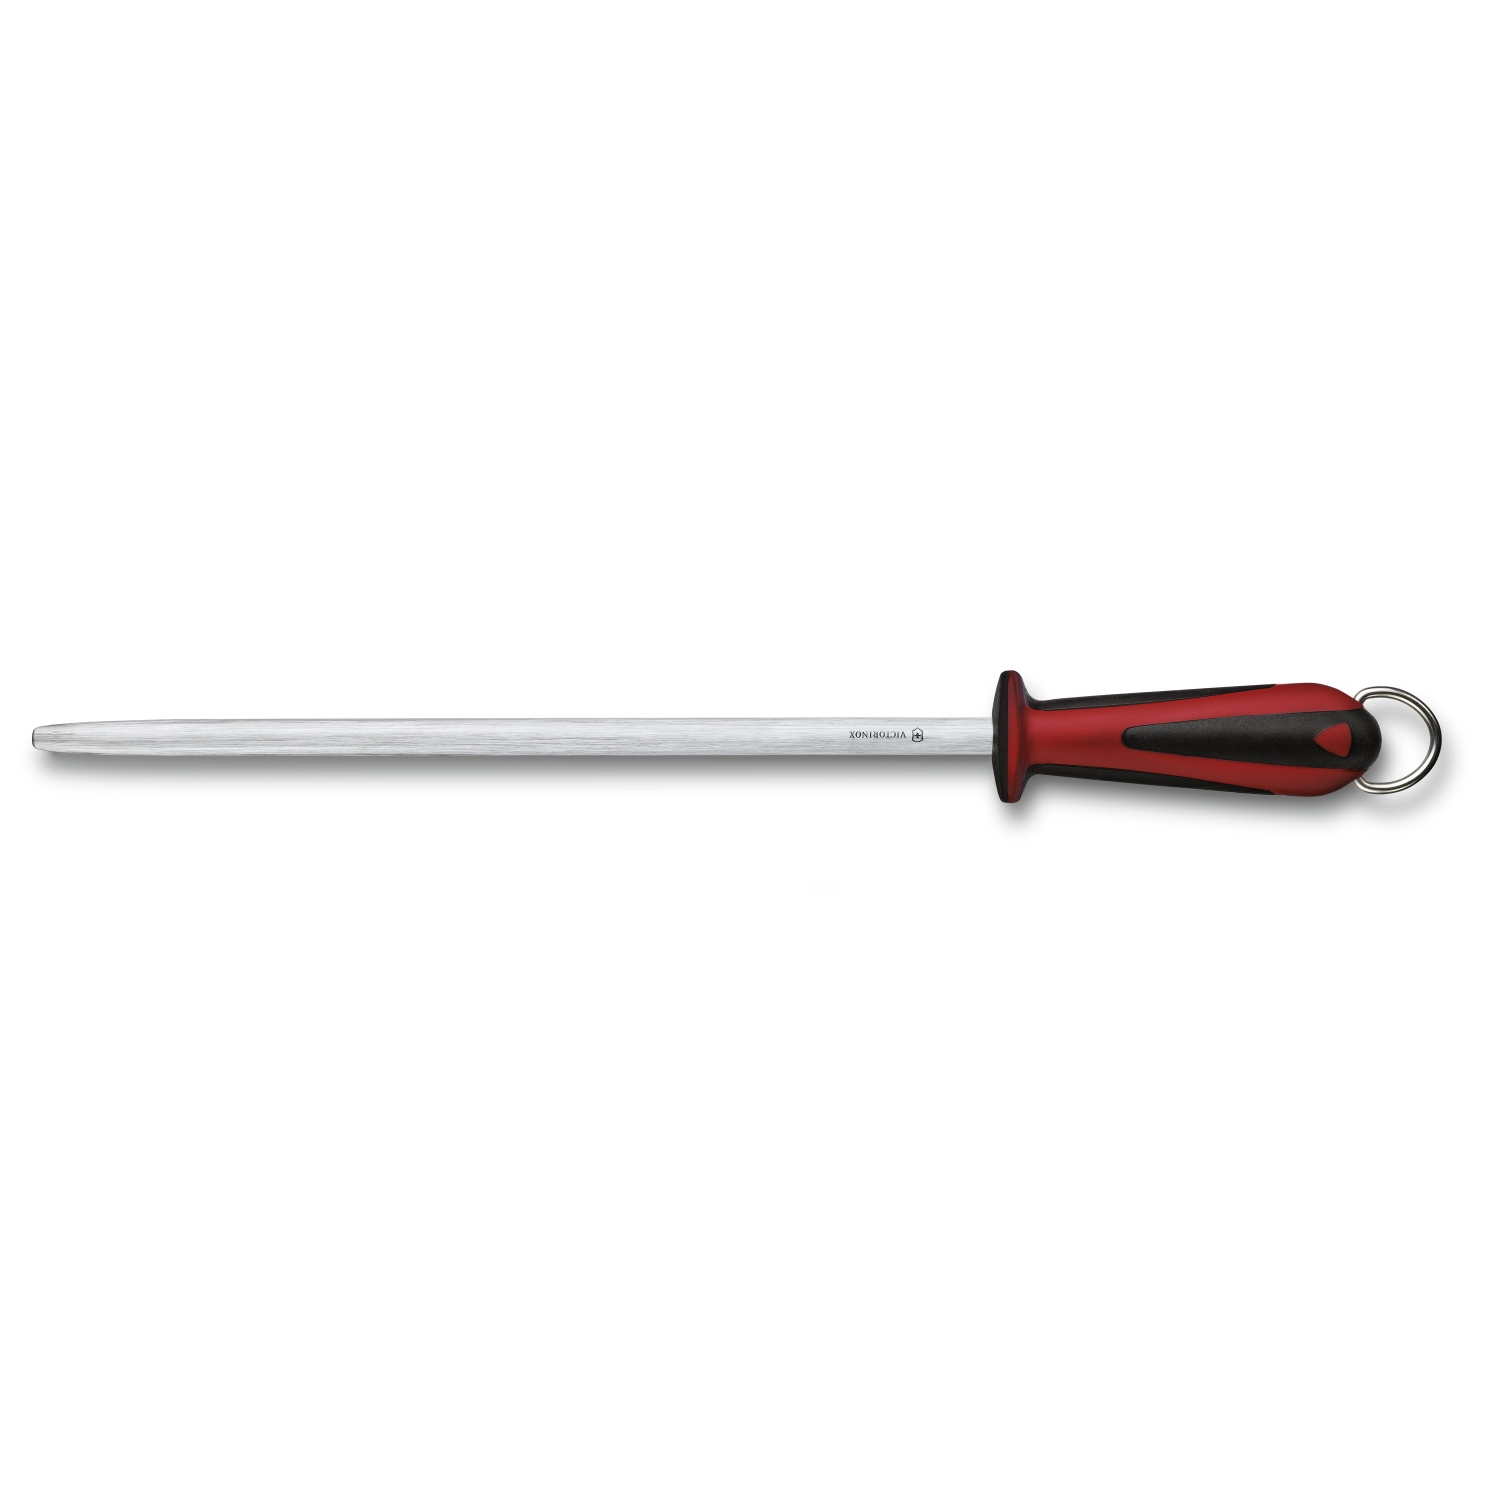 Victorinox Brousek Dual Grip, honing steel, 30cm, micro-fine cut, round